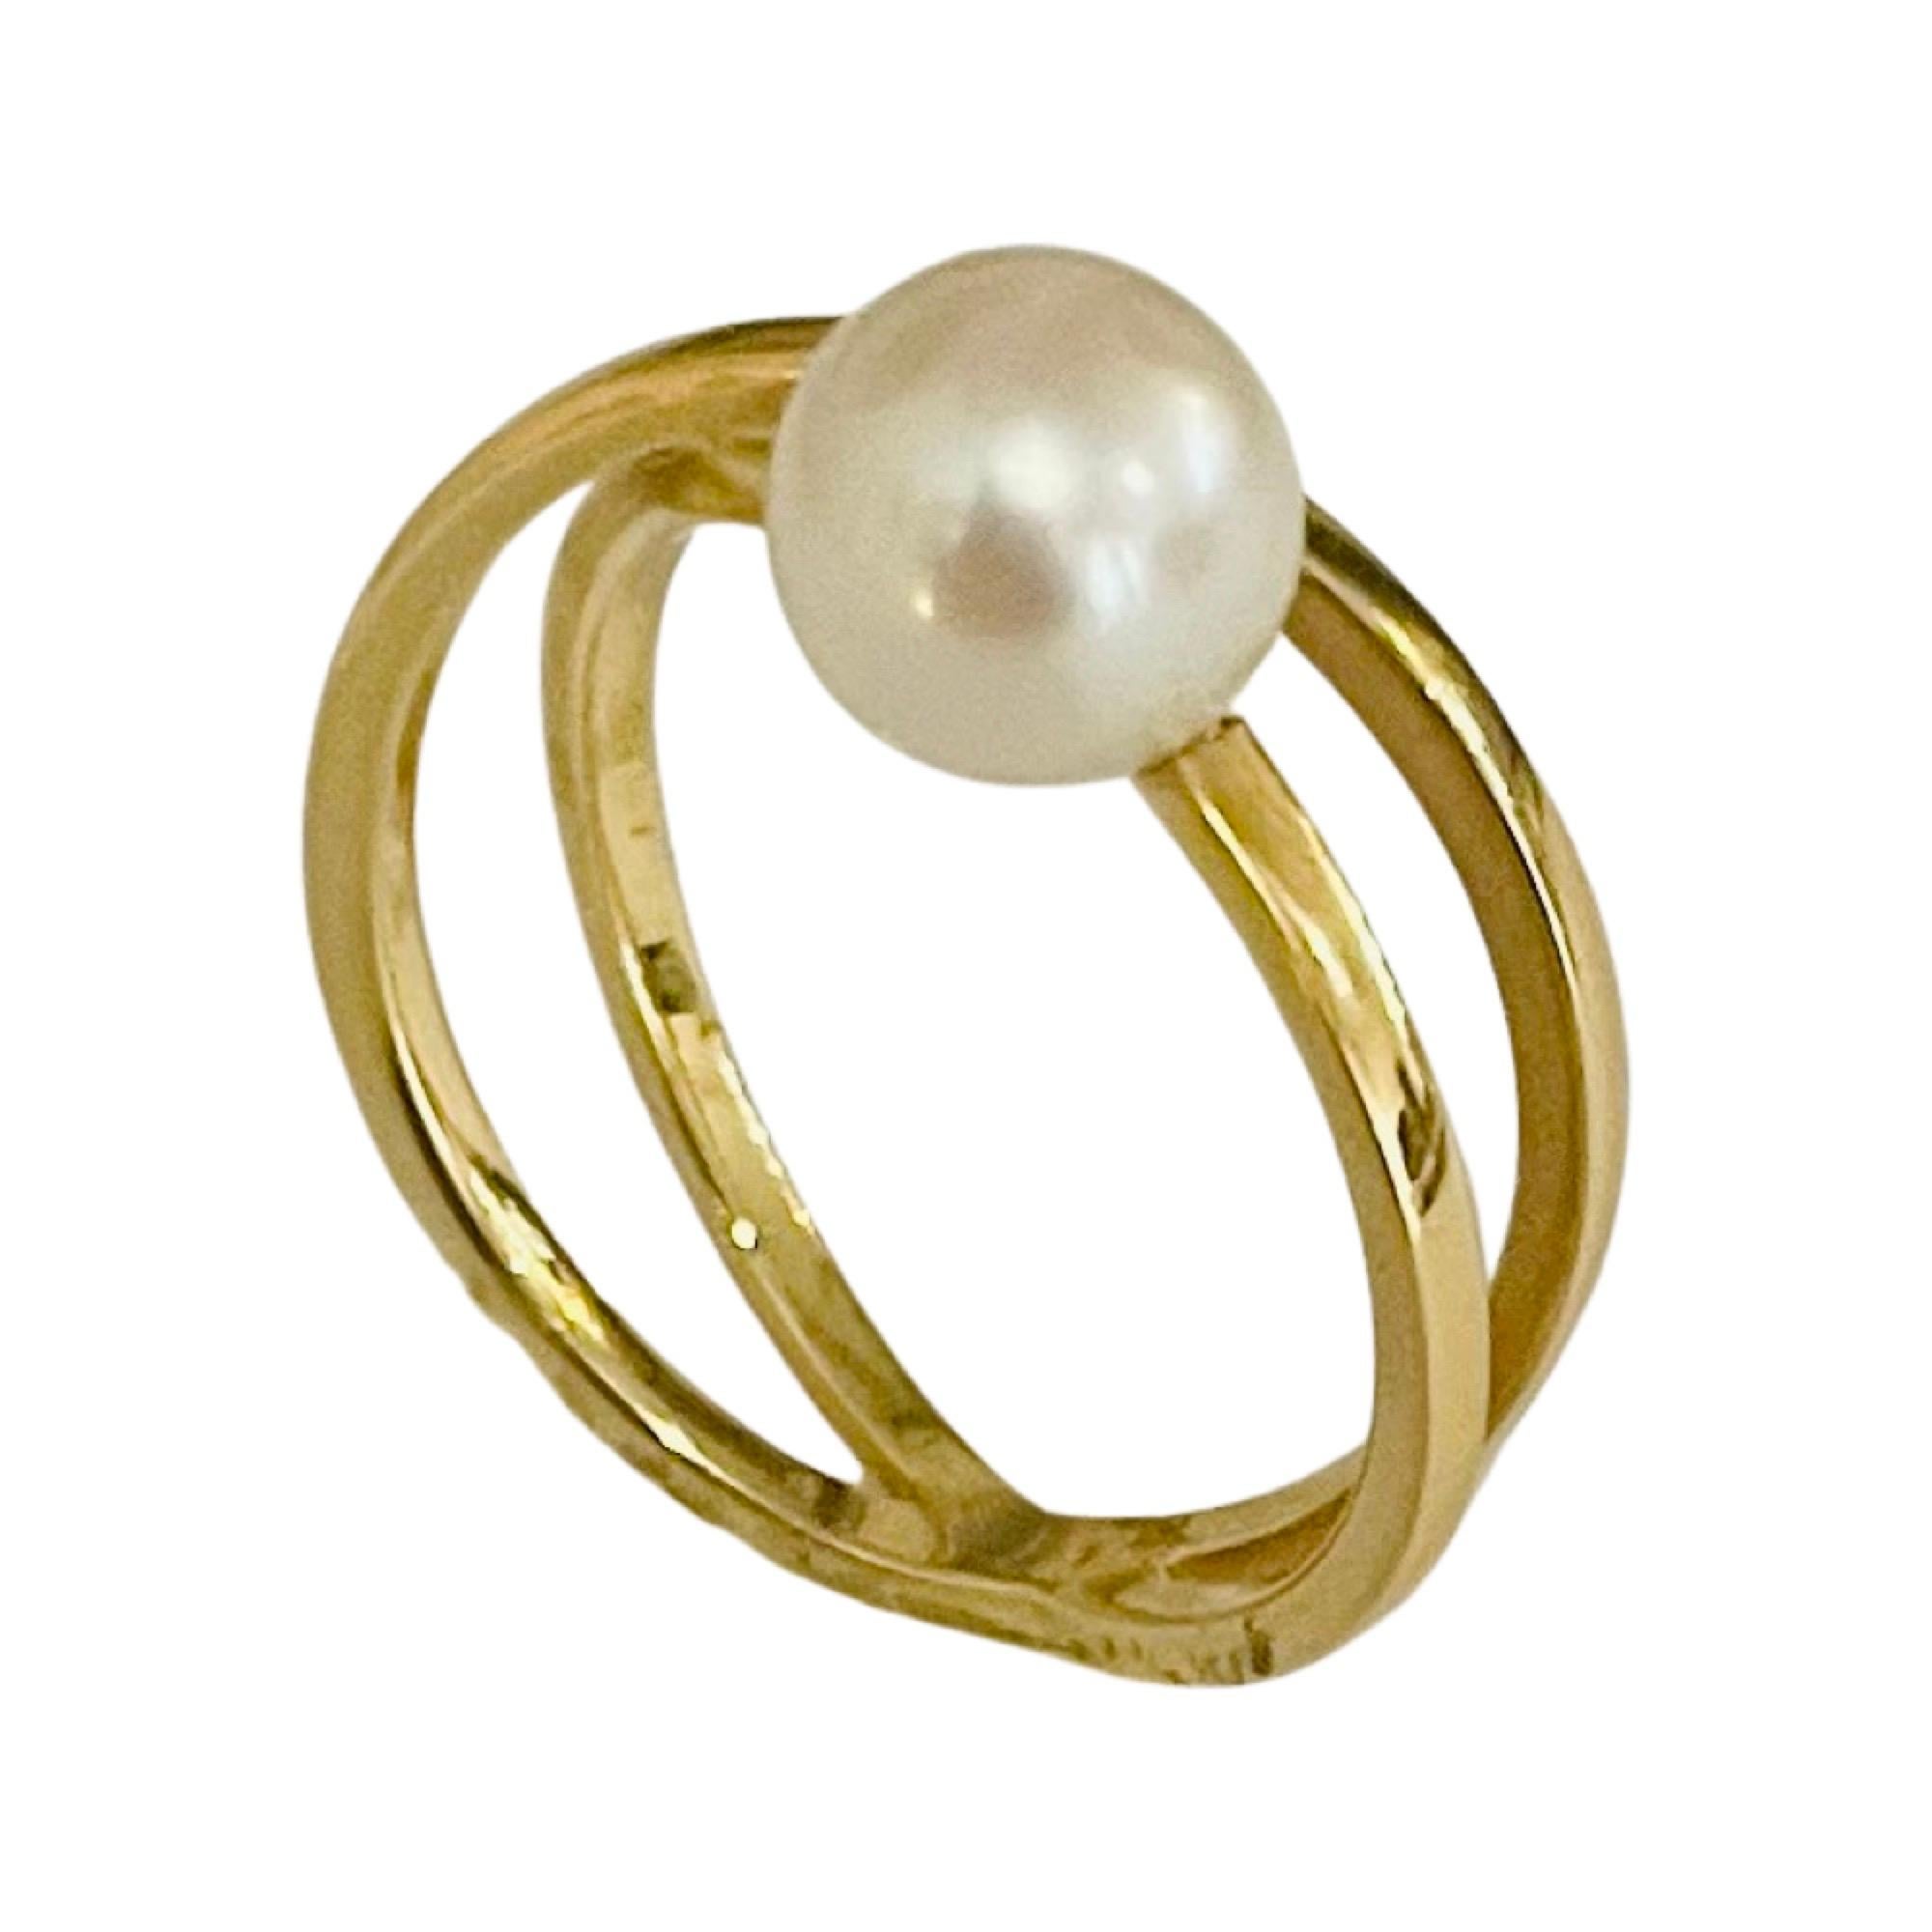 18K Gelbgold Kultiviert Natürliche Japanische Akoya Perle Ring. Dies ist ein Gellner-Ring. Die Perle ist 7,5 mm groß. Die Perle ist rund, hat einen hohen Glanz und einen rosafarbenen Unterton.  Er beträgt 7,0 mm am oberen Ende des Schaftes und